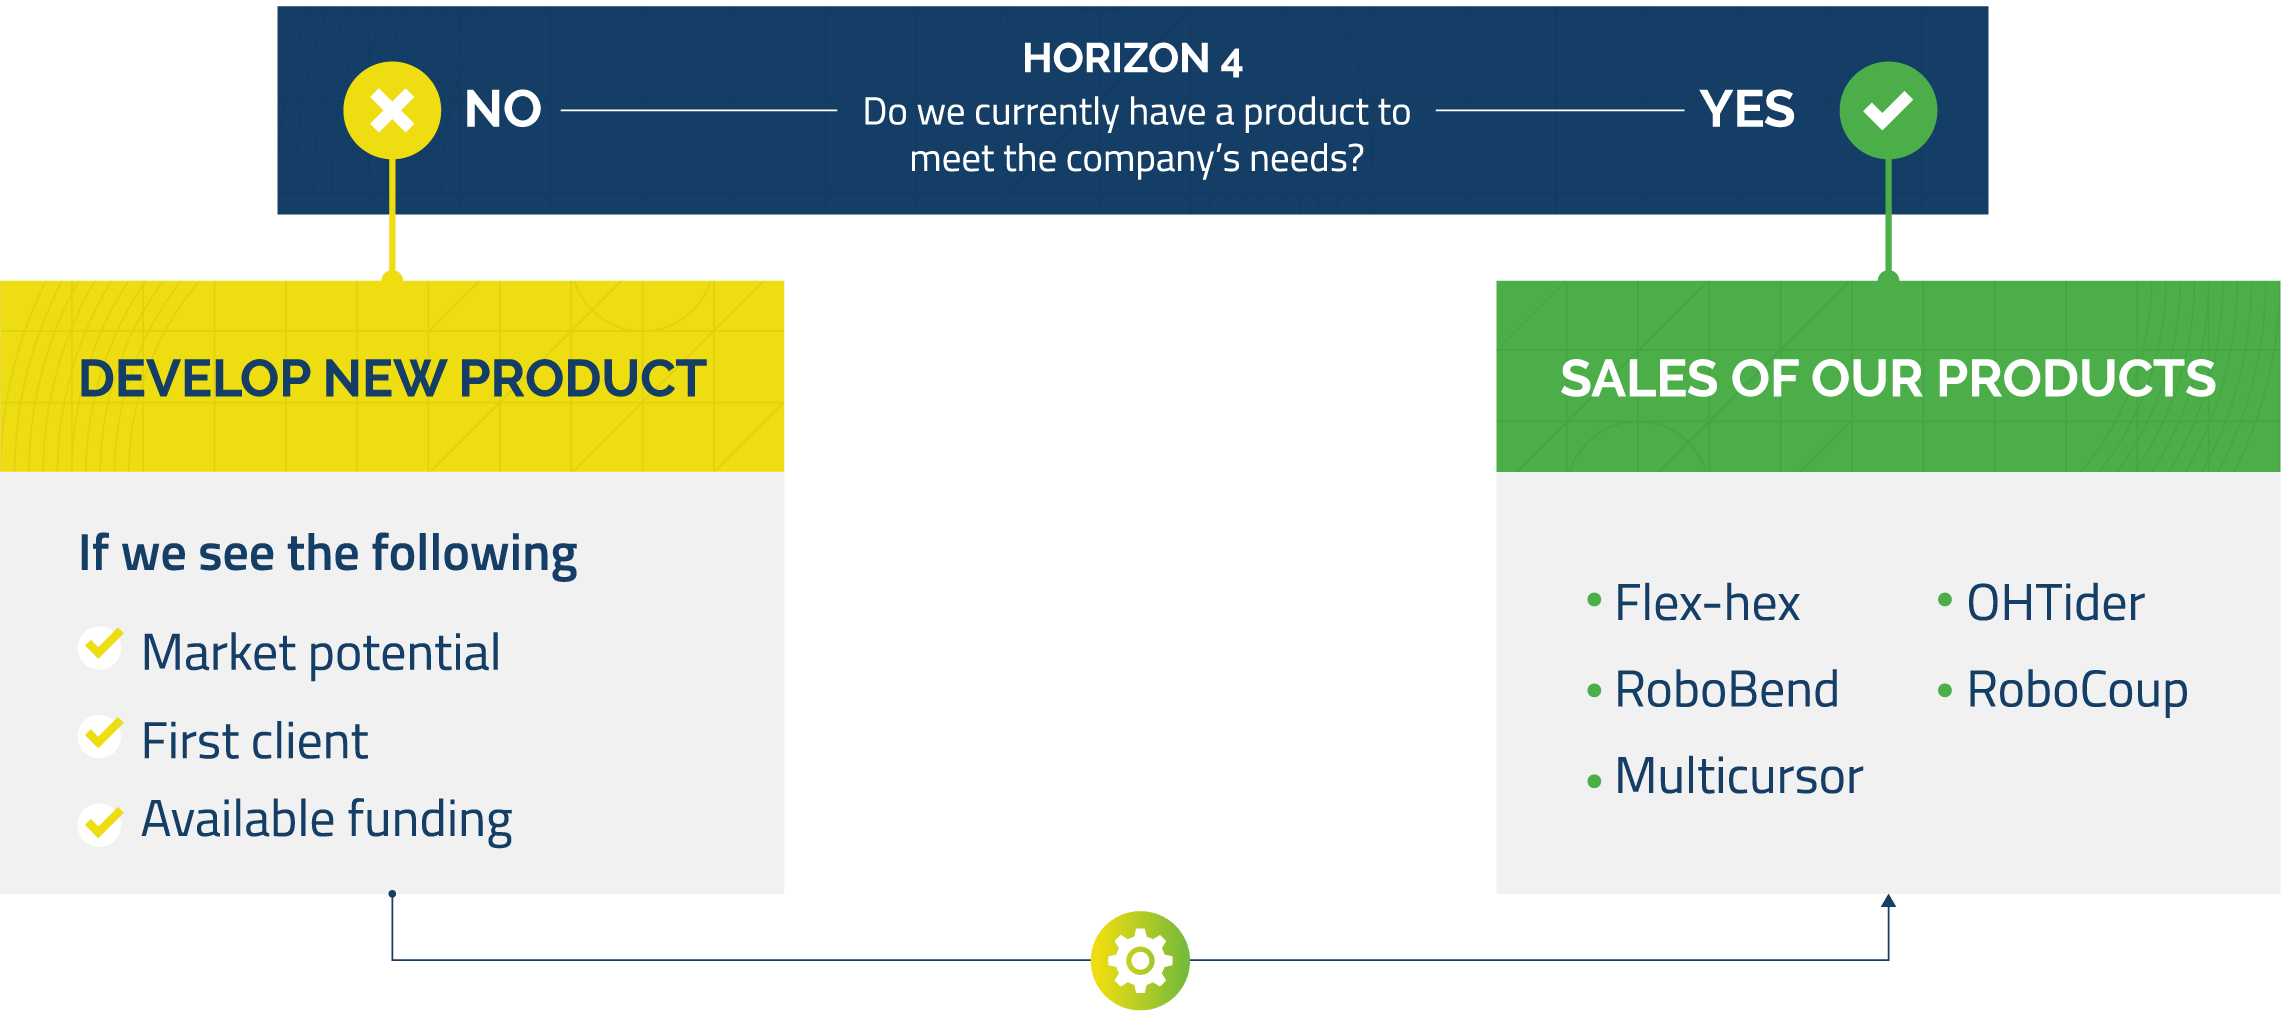 Horizon 4